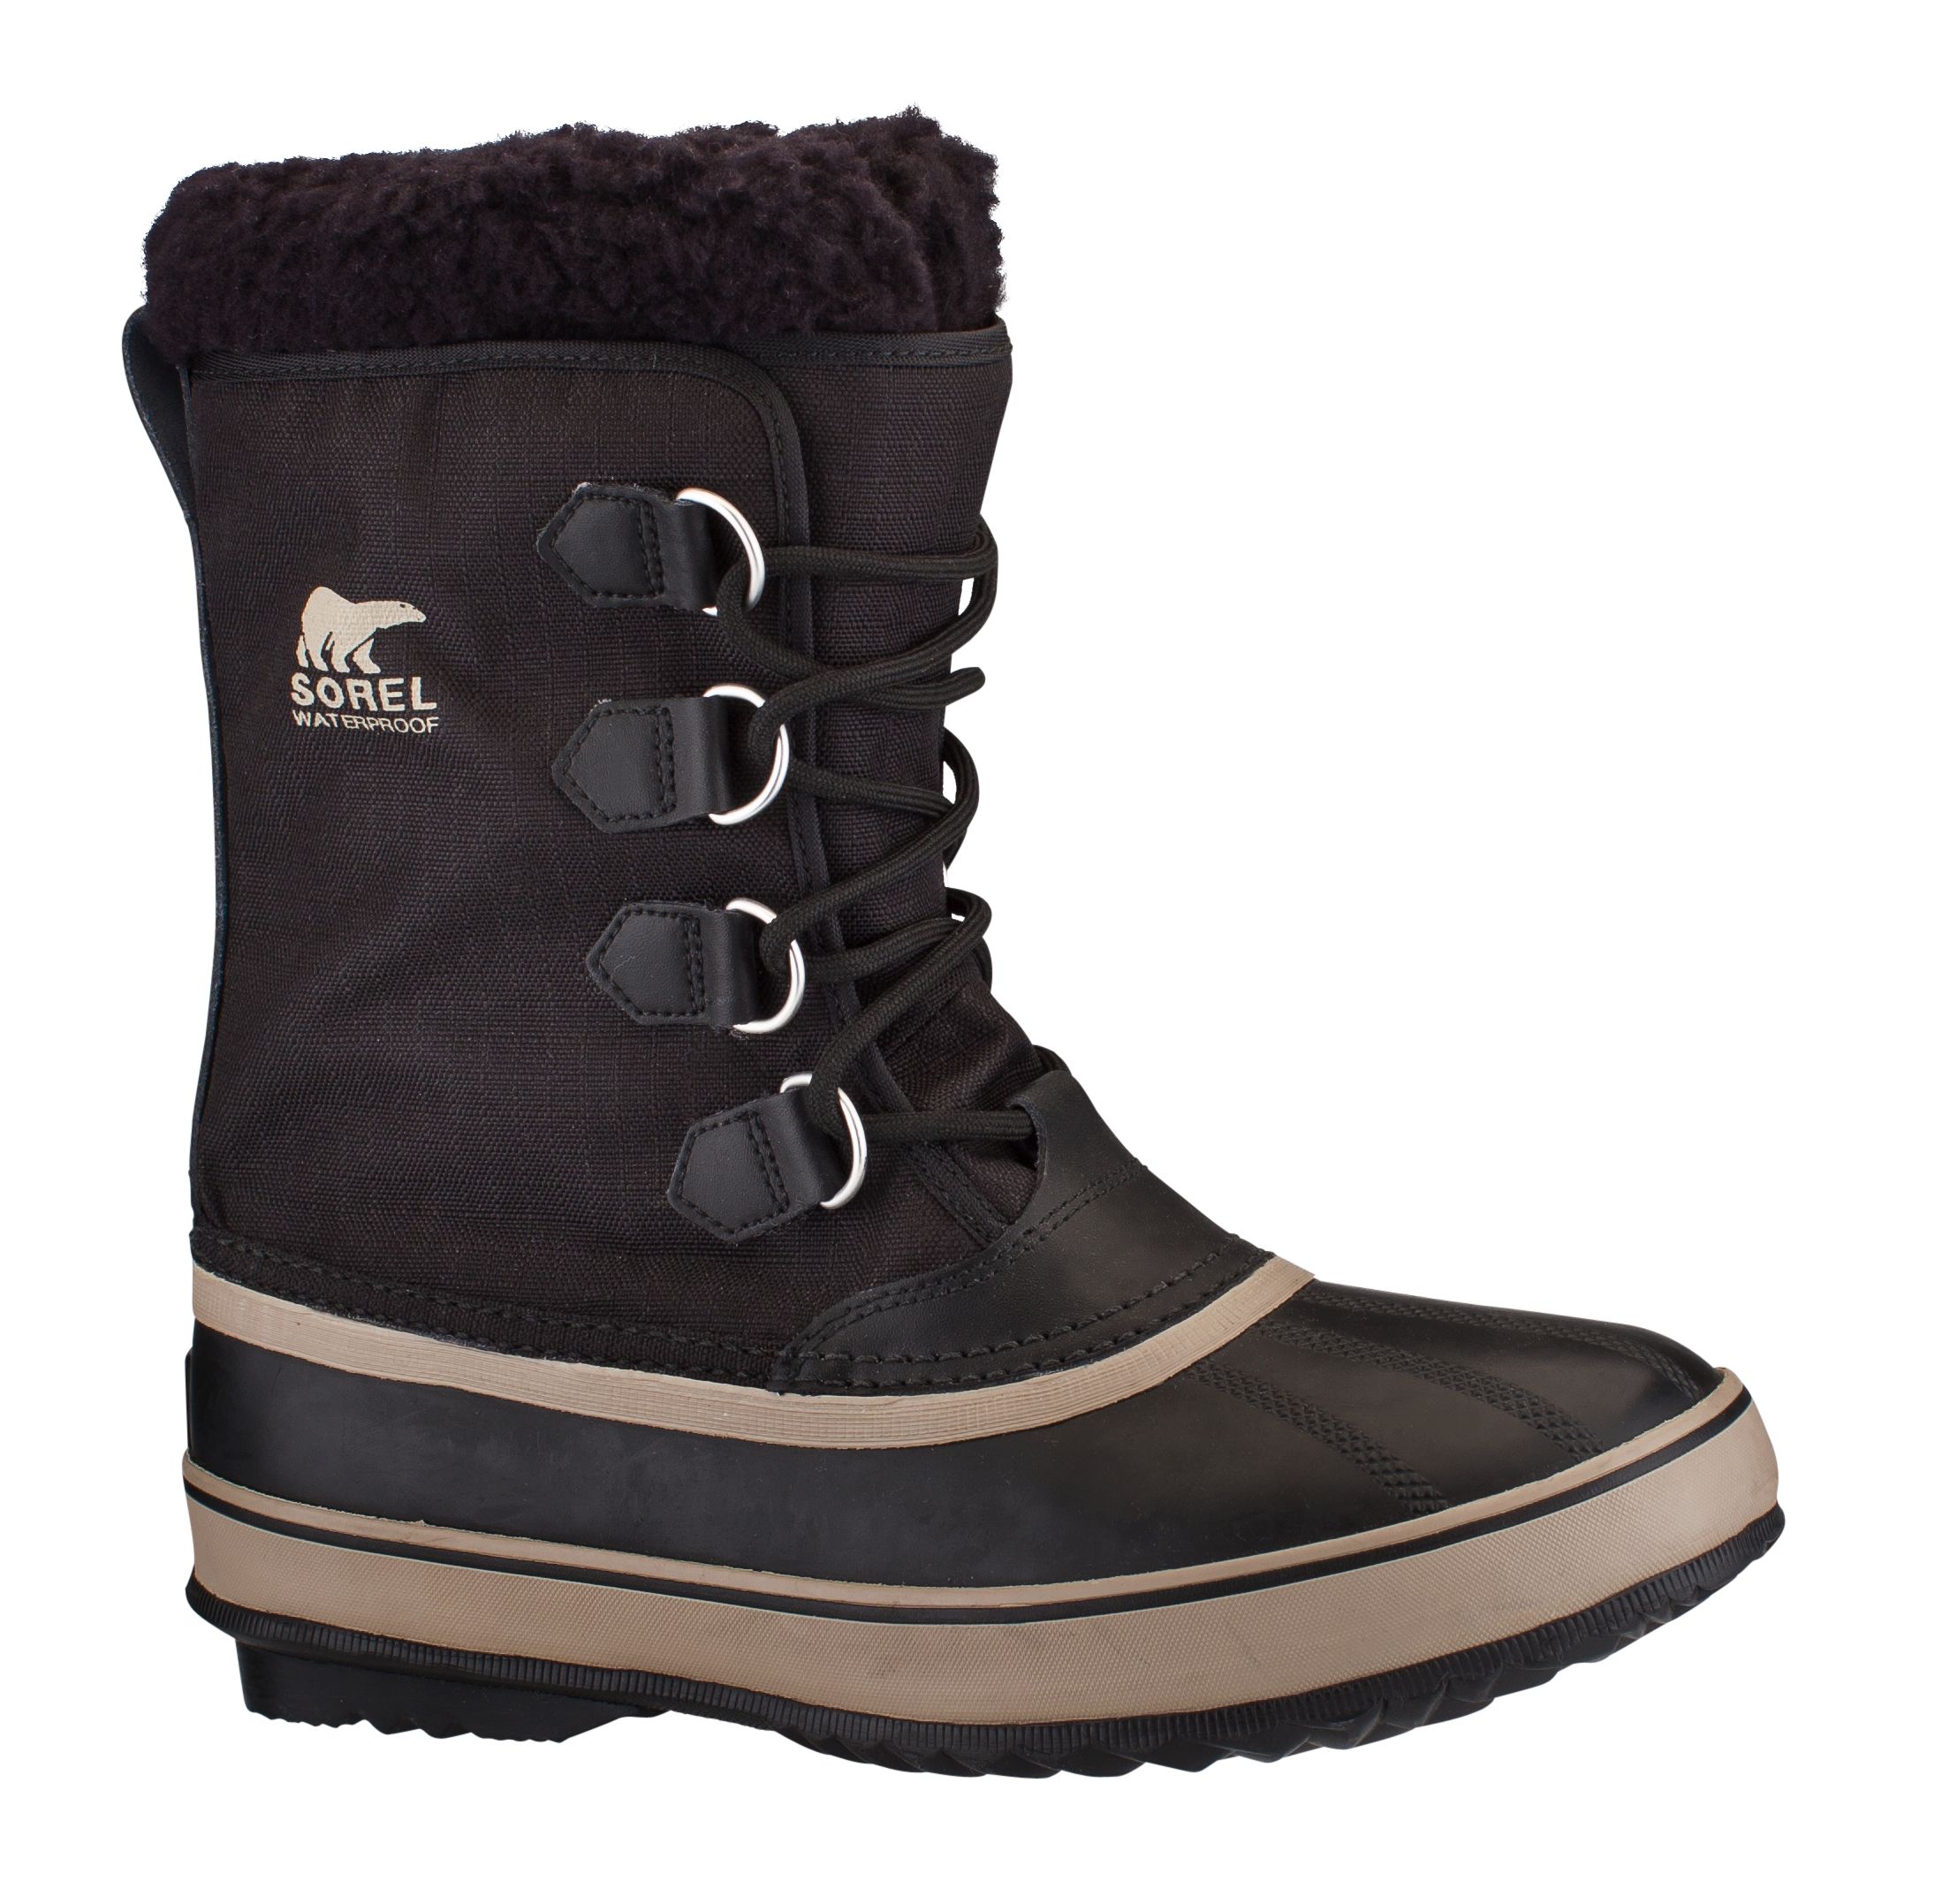 Sorel Men's 164 Pac Nylon Winter Boots  Waterproof